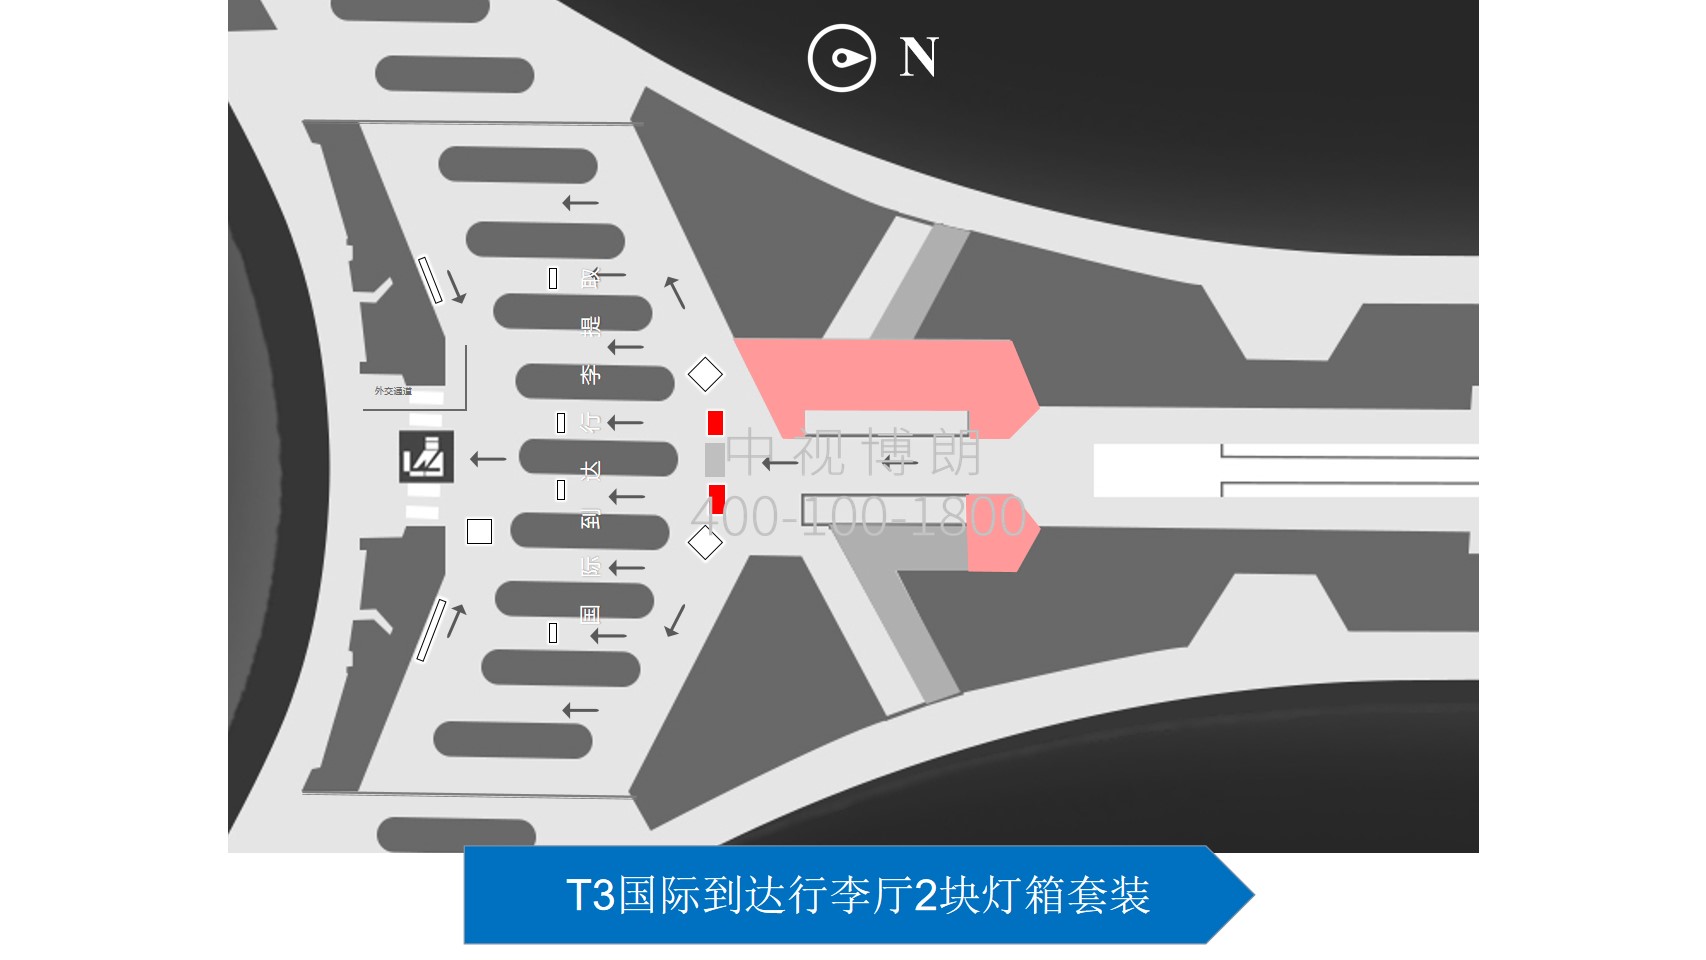 北京首都机场广告-T3国际到达行李厅灯箱套装位置图